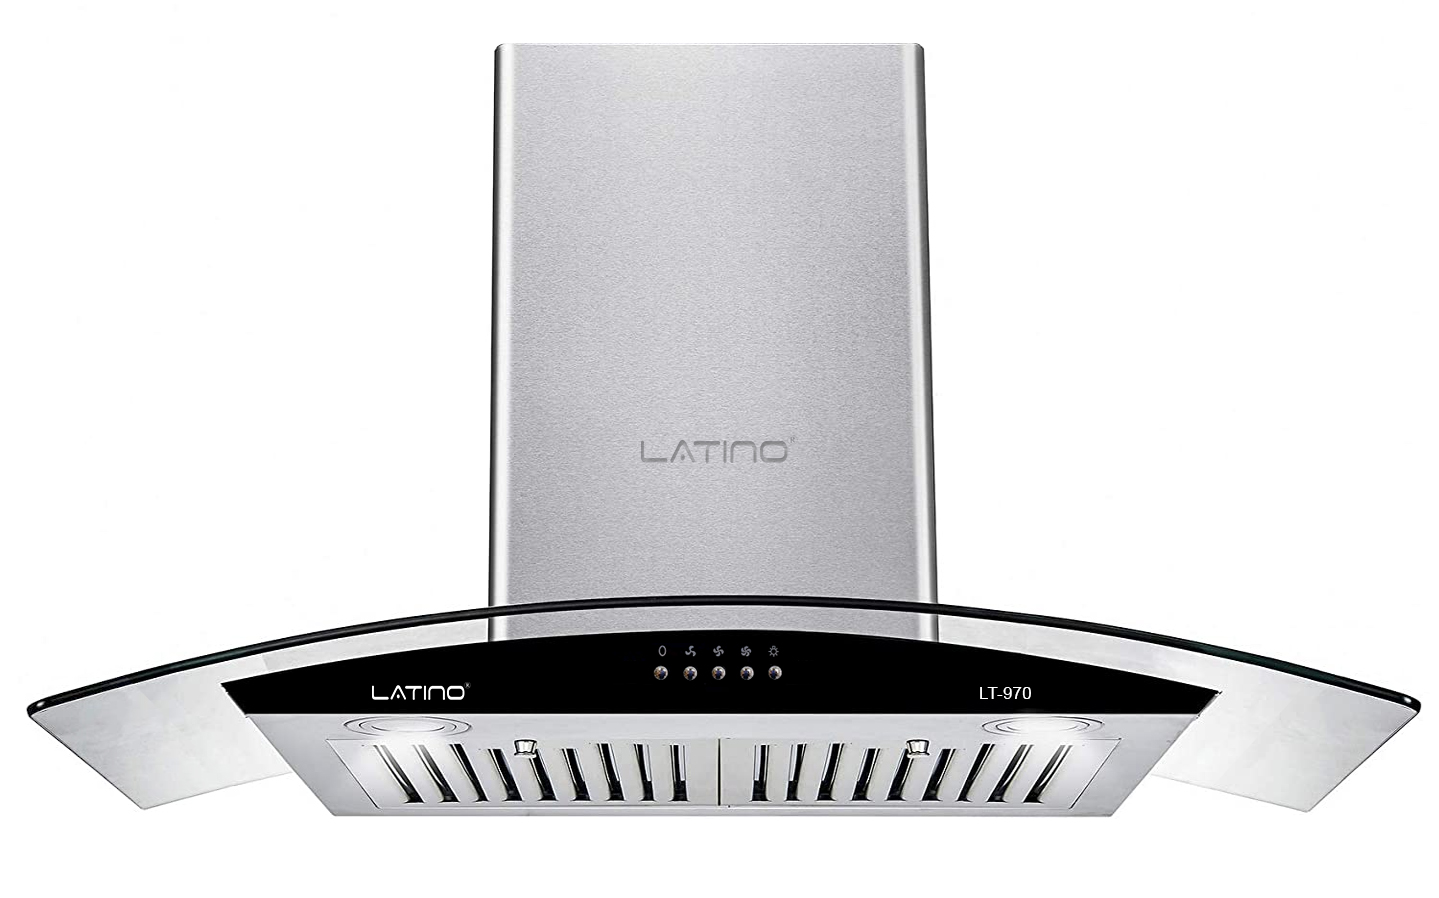 Máy hút mùi Latino LT-970